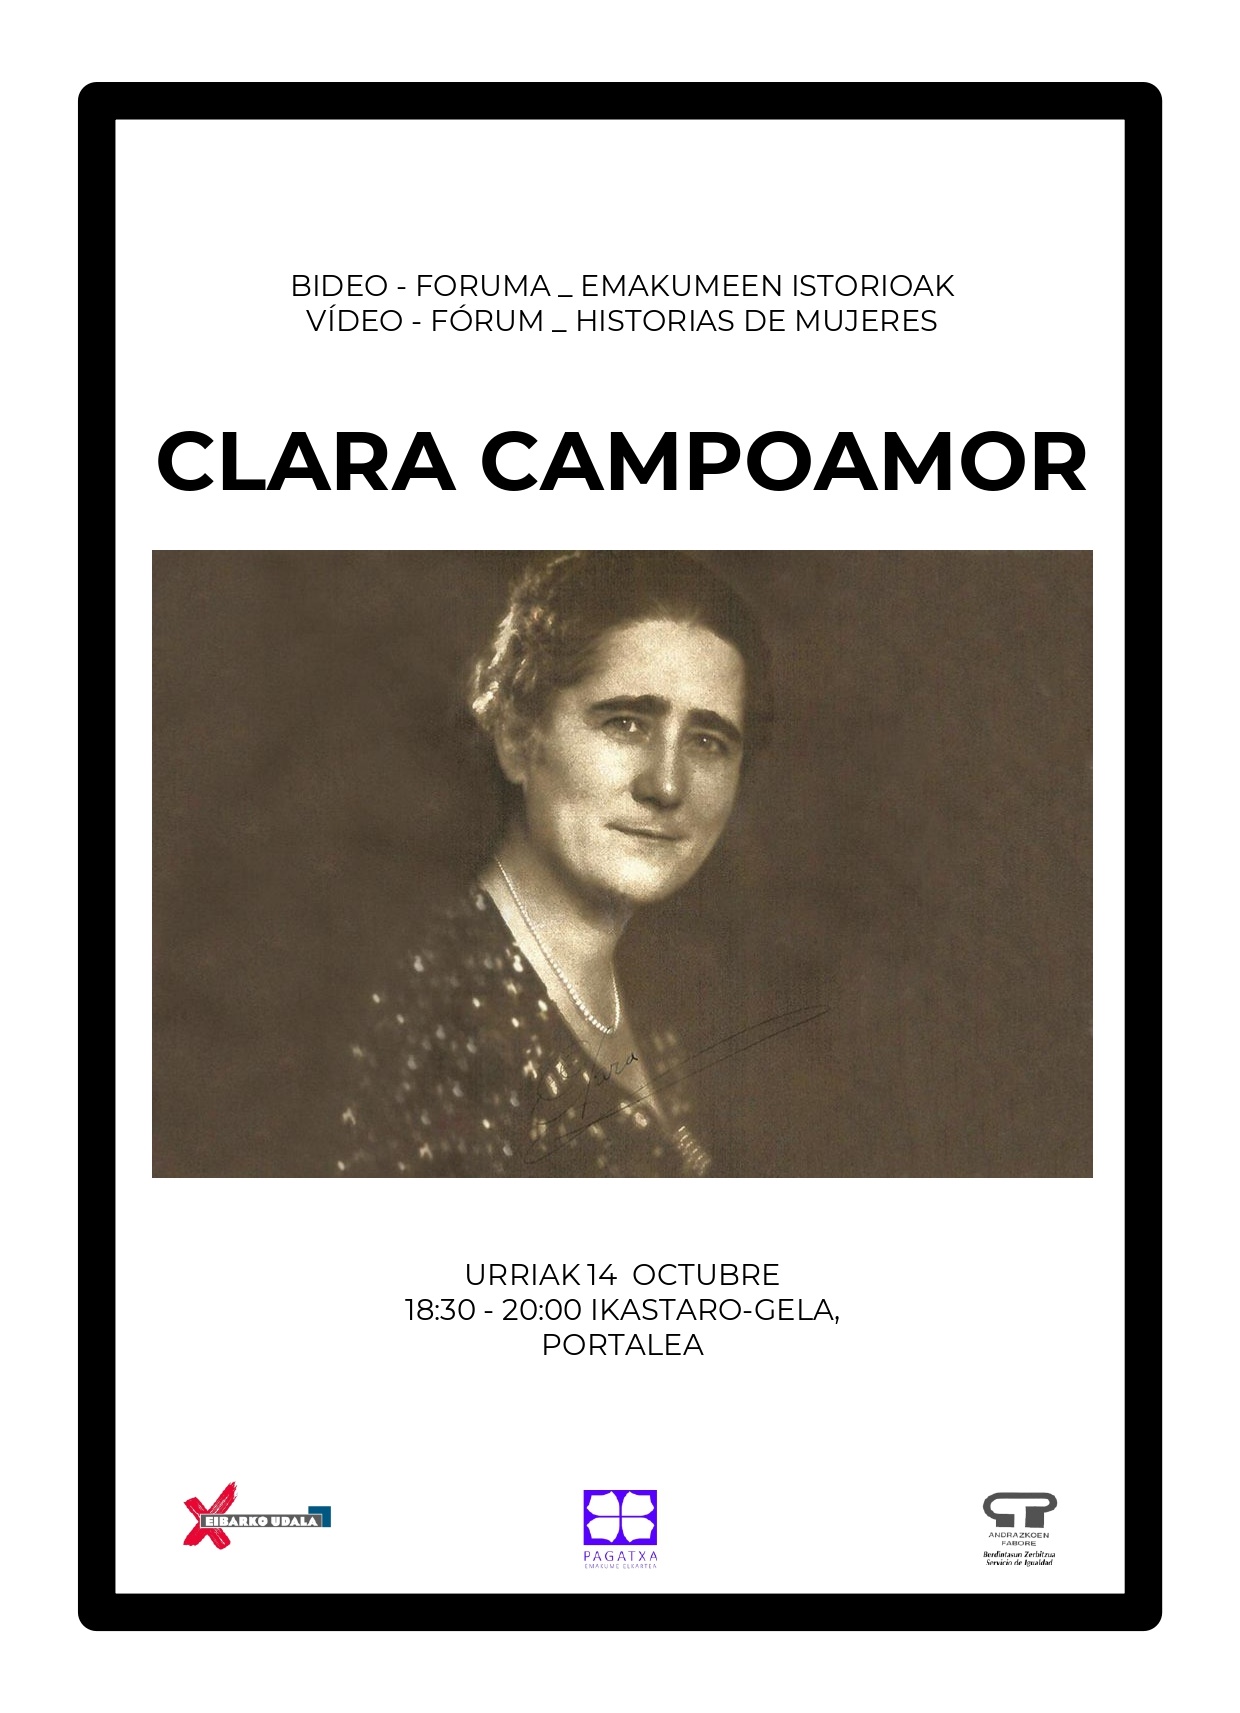 Video Forum de Historias de mujeres: Clara Campoamor